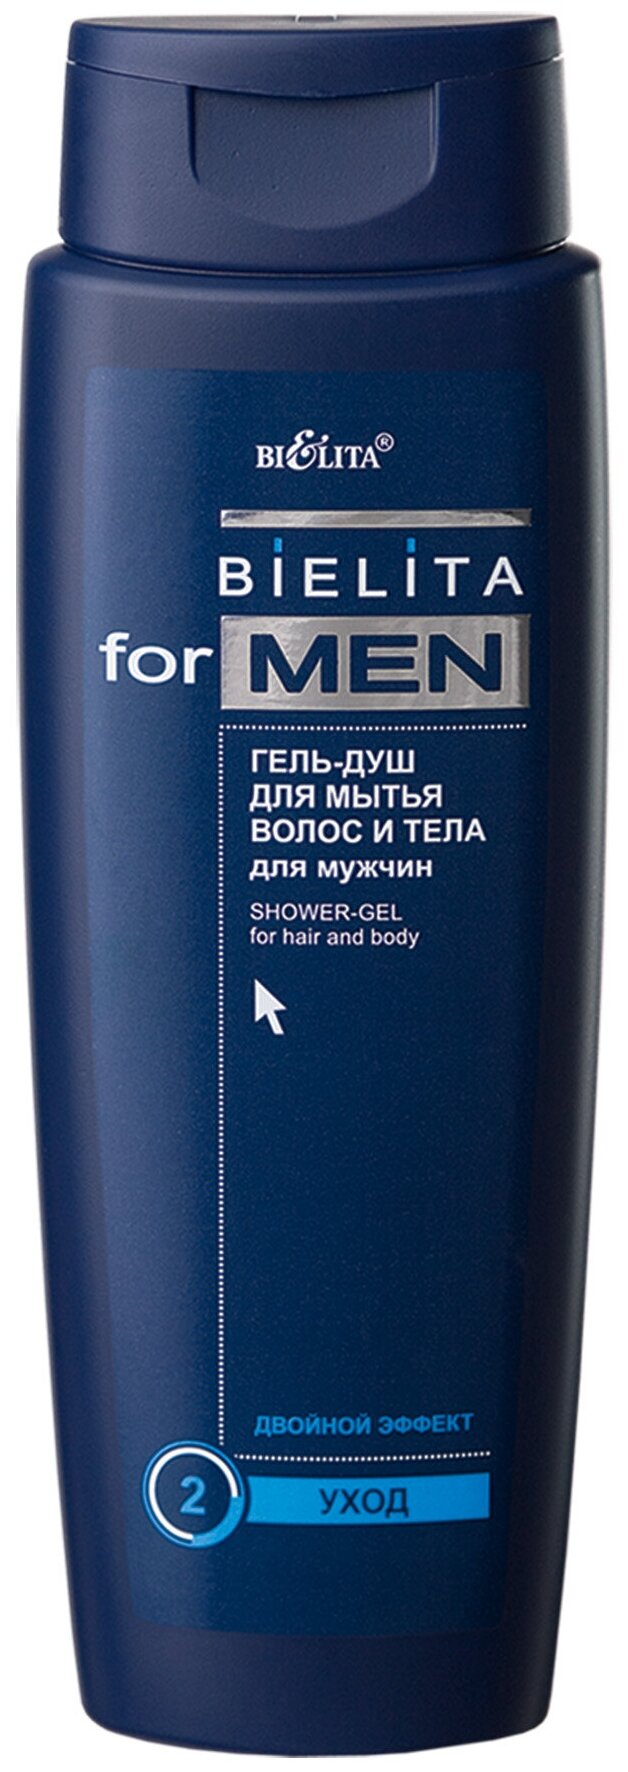 Гель для душа Bielita for men для волос и тела, 400 мл